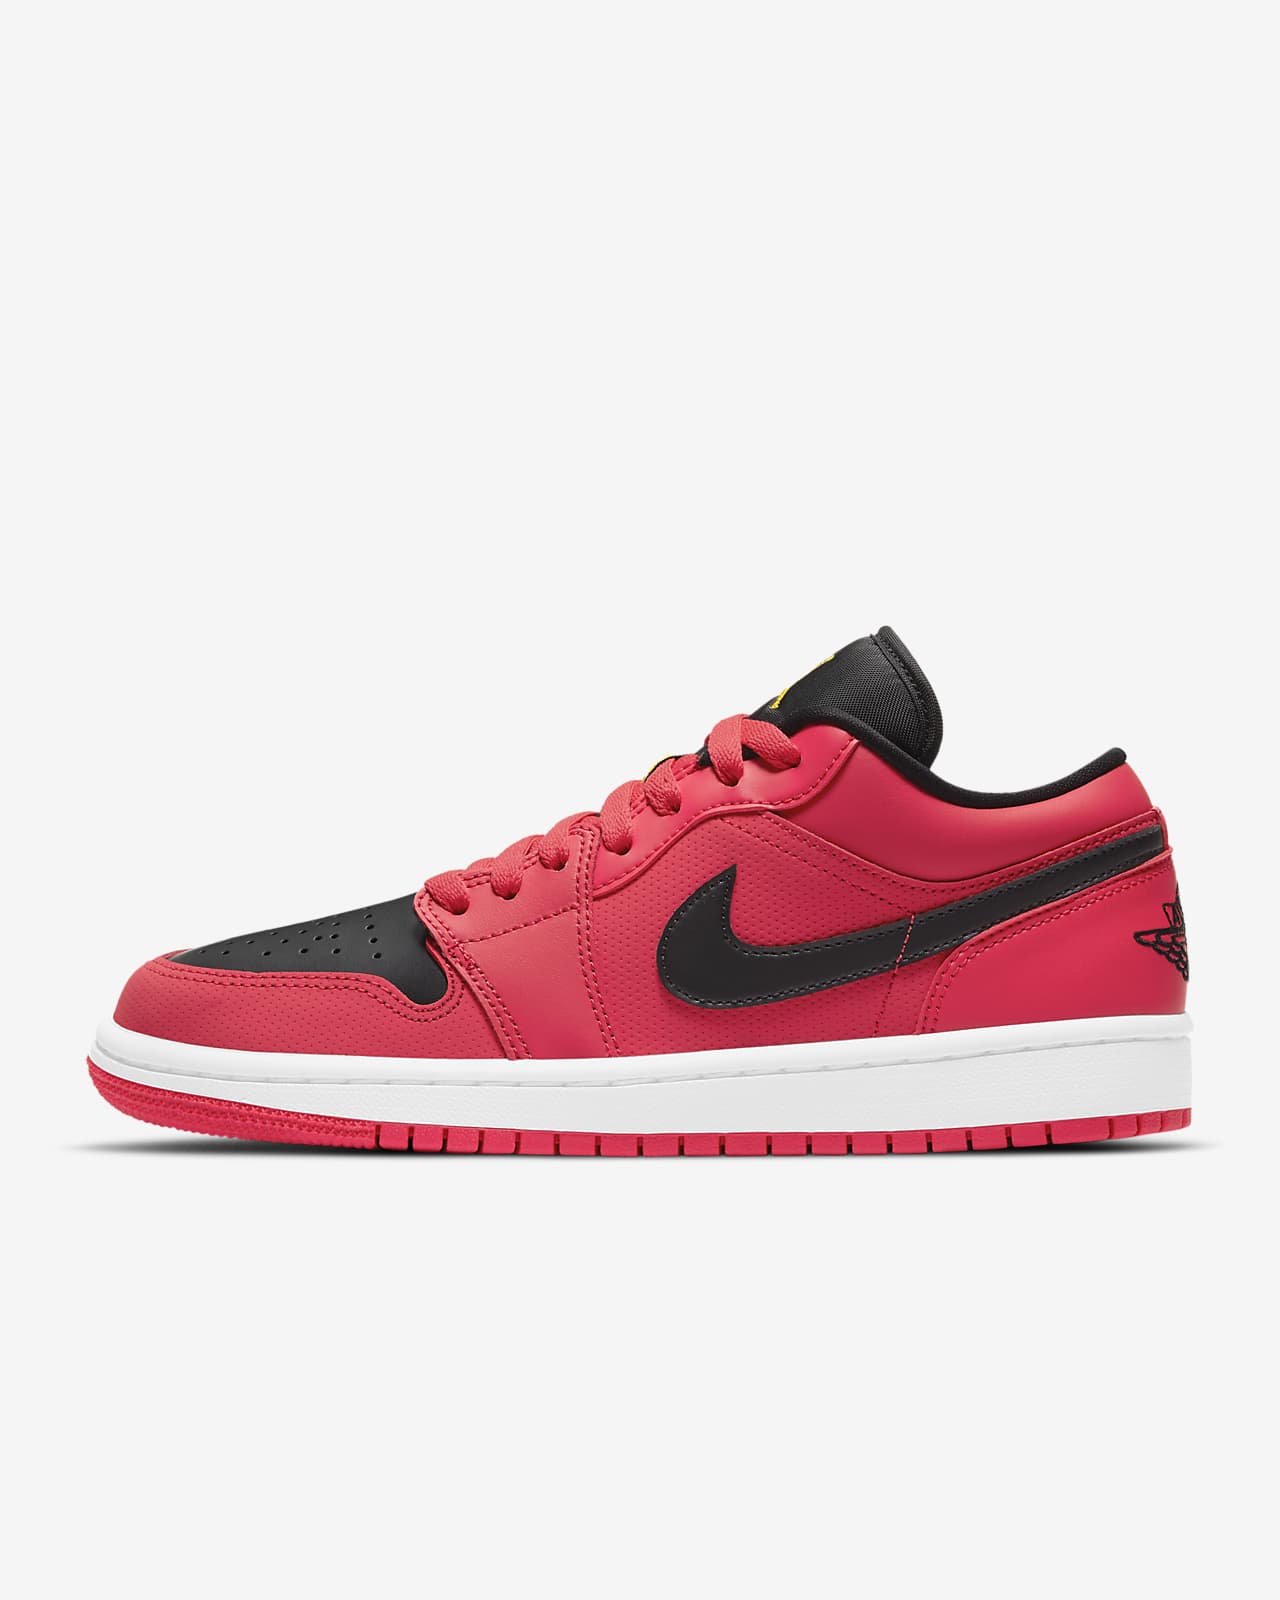 Air Jordan 1 Low Women's Shoe. Nike NL